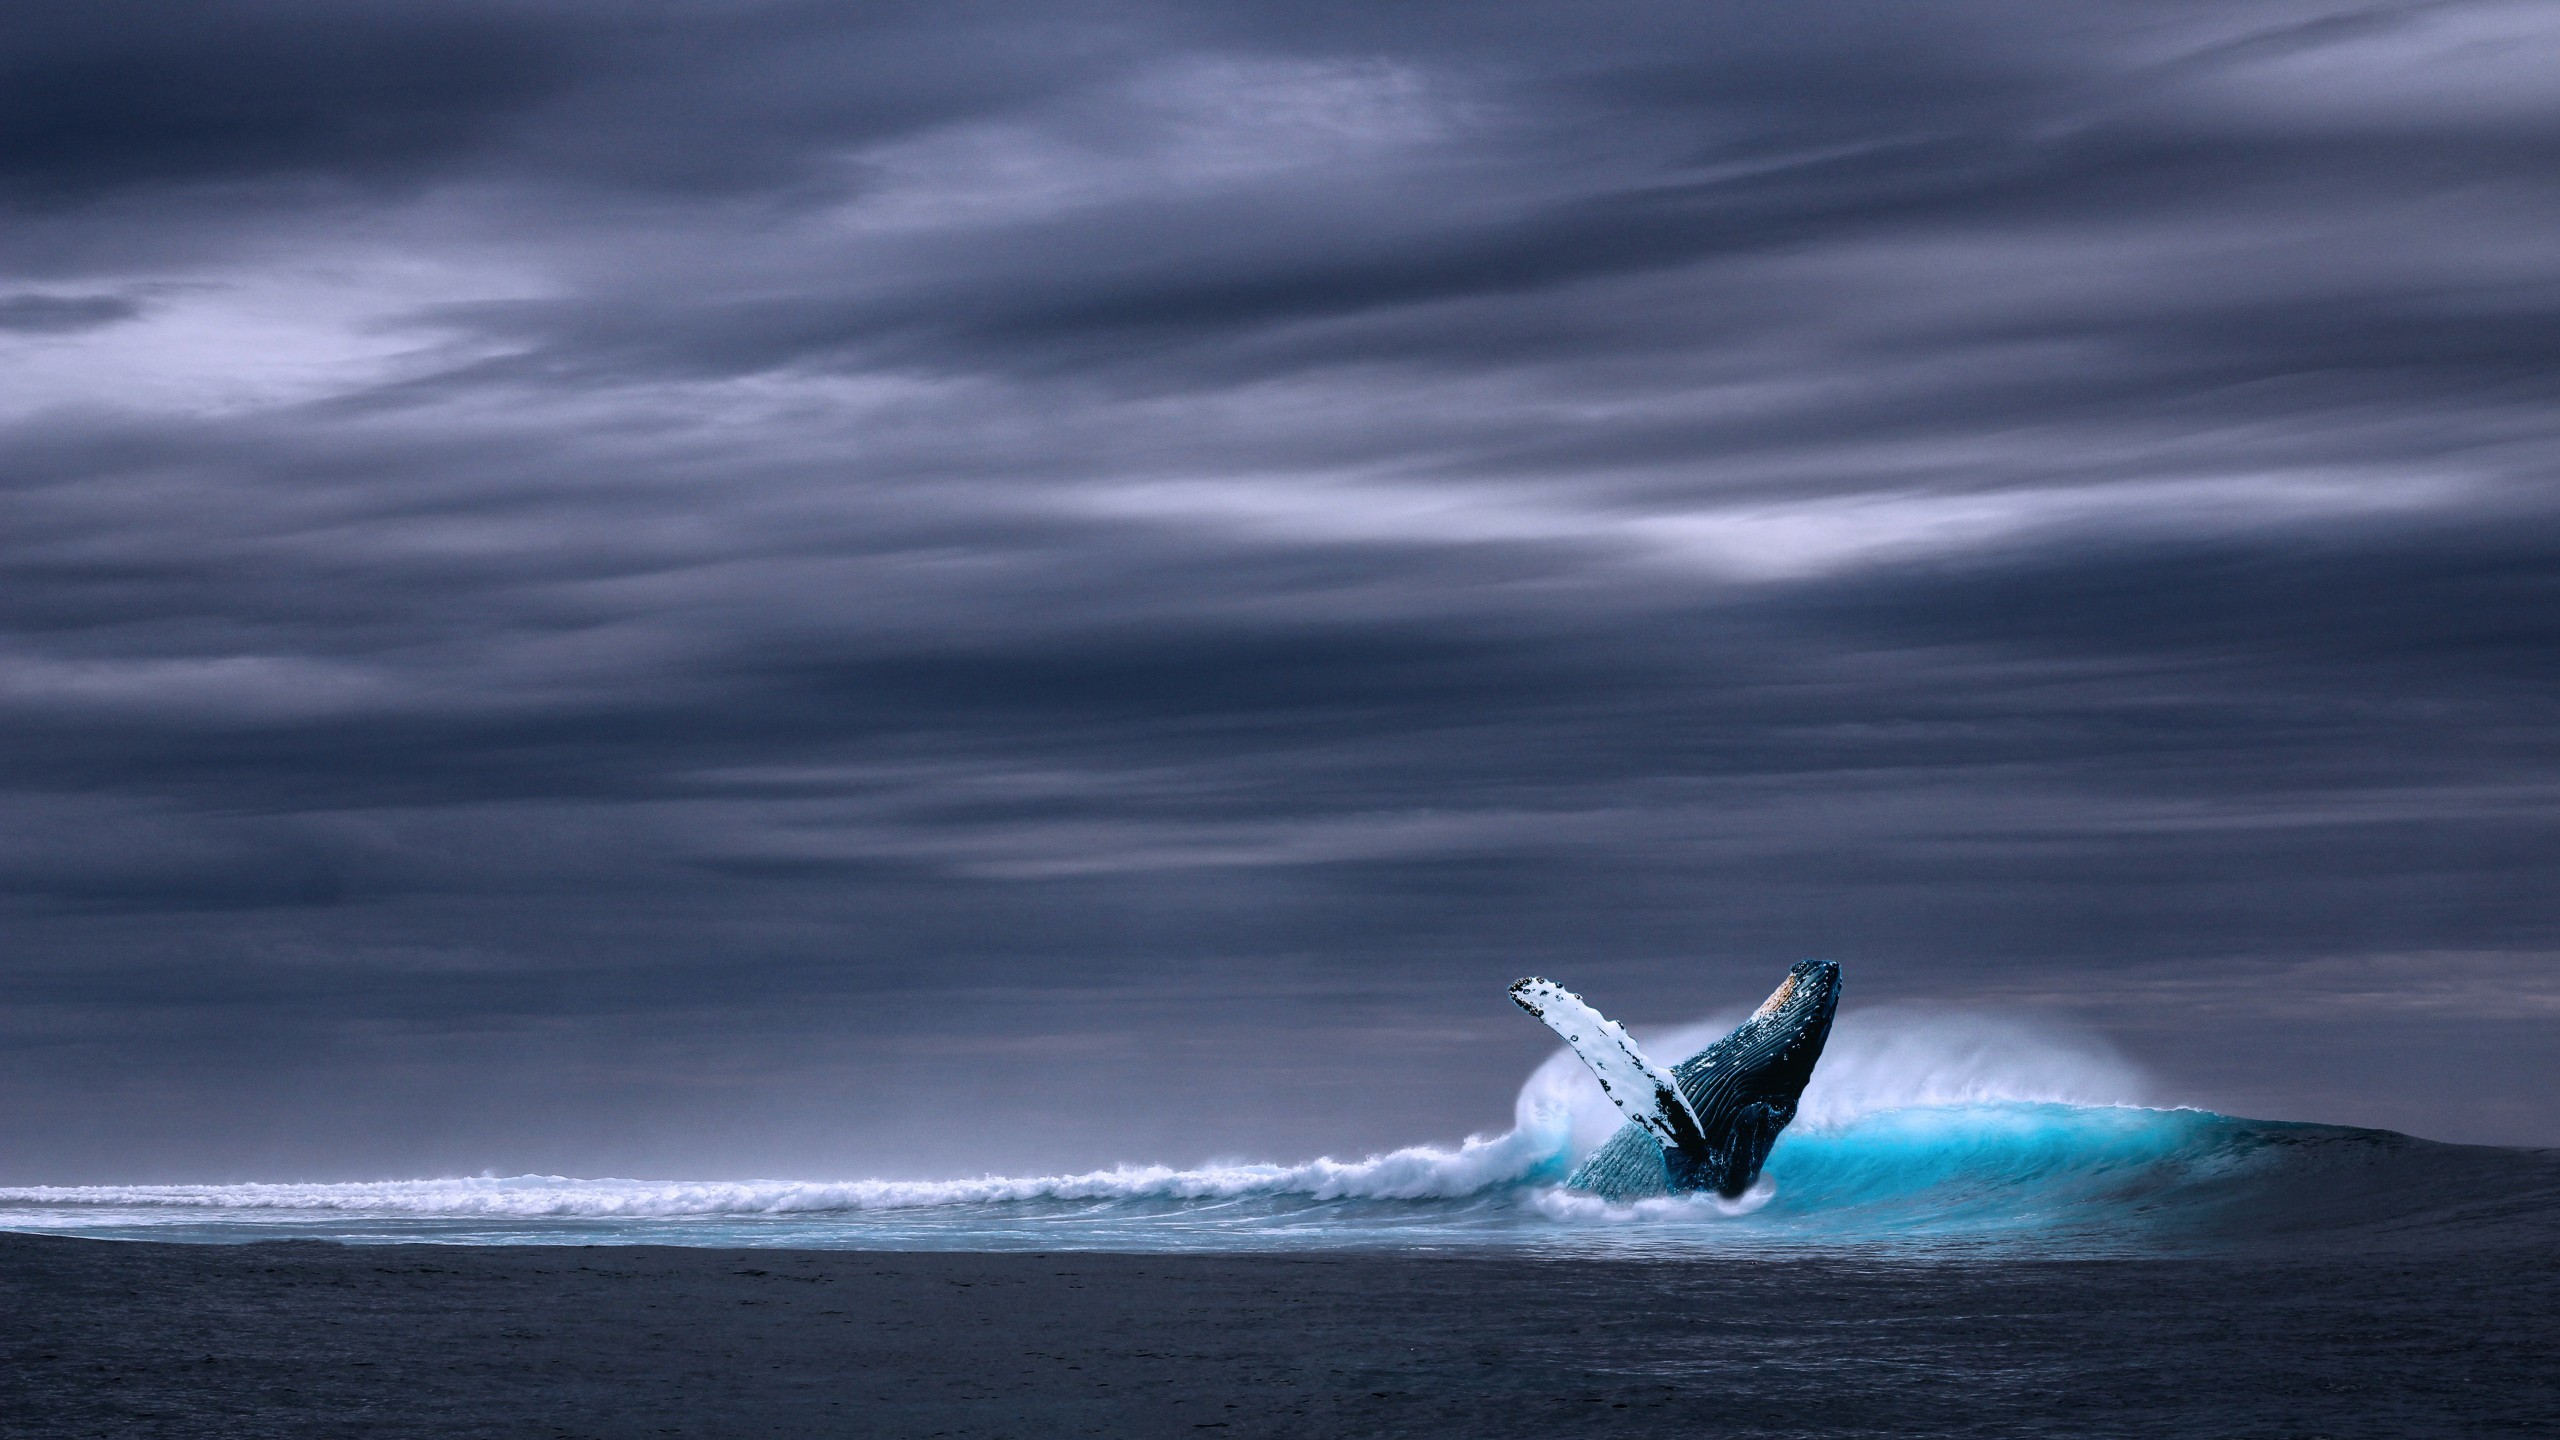 blue whale wallpaper hd,wave,wind wave,ocean,sea,sky